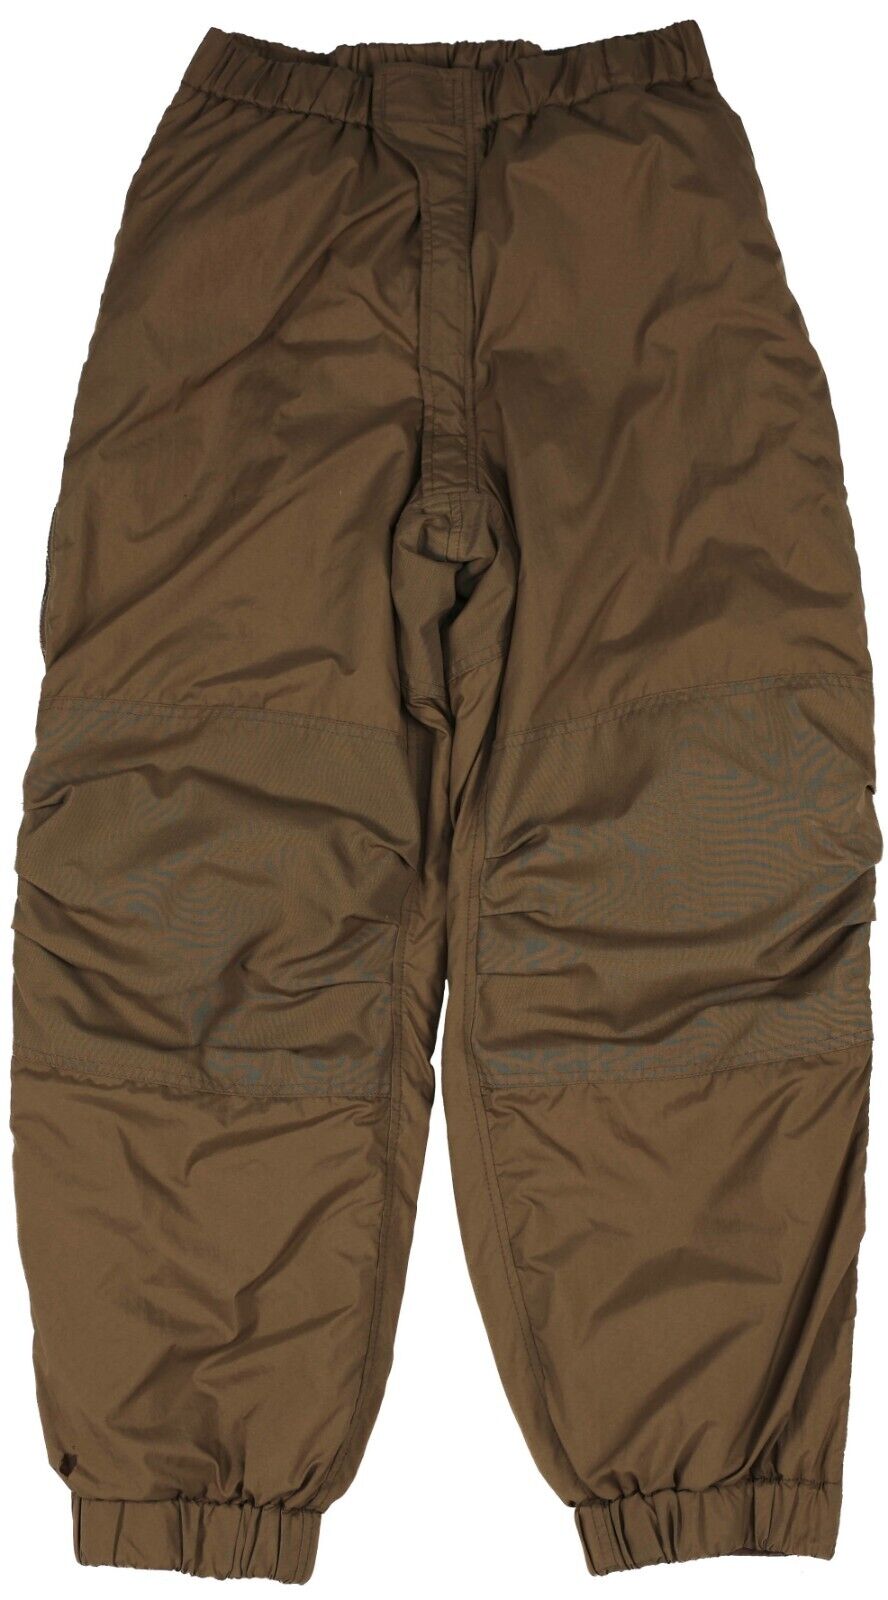 XLarge Long - USMC Extreme Cold Weather Trousers Happy Suit Primaloft Pants Snow